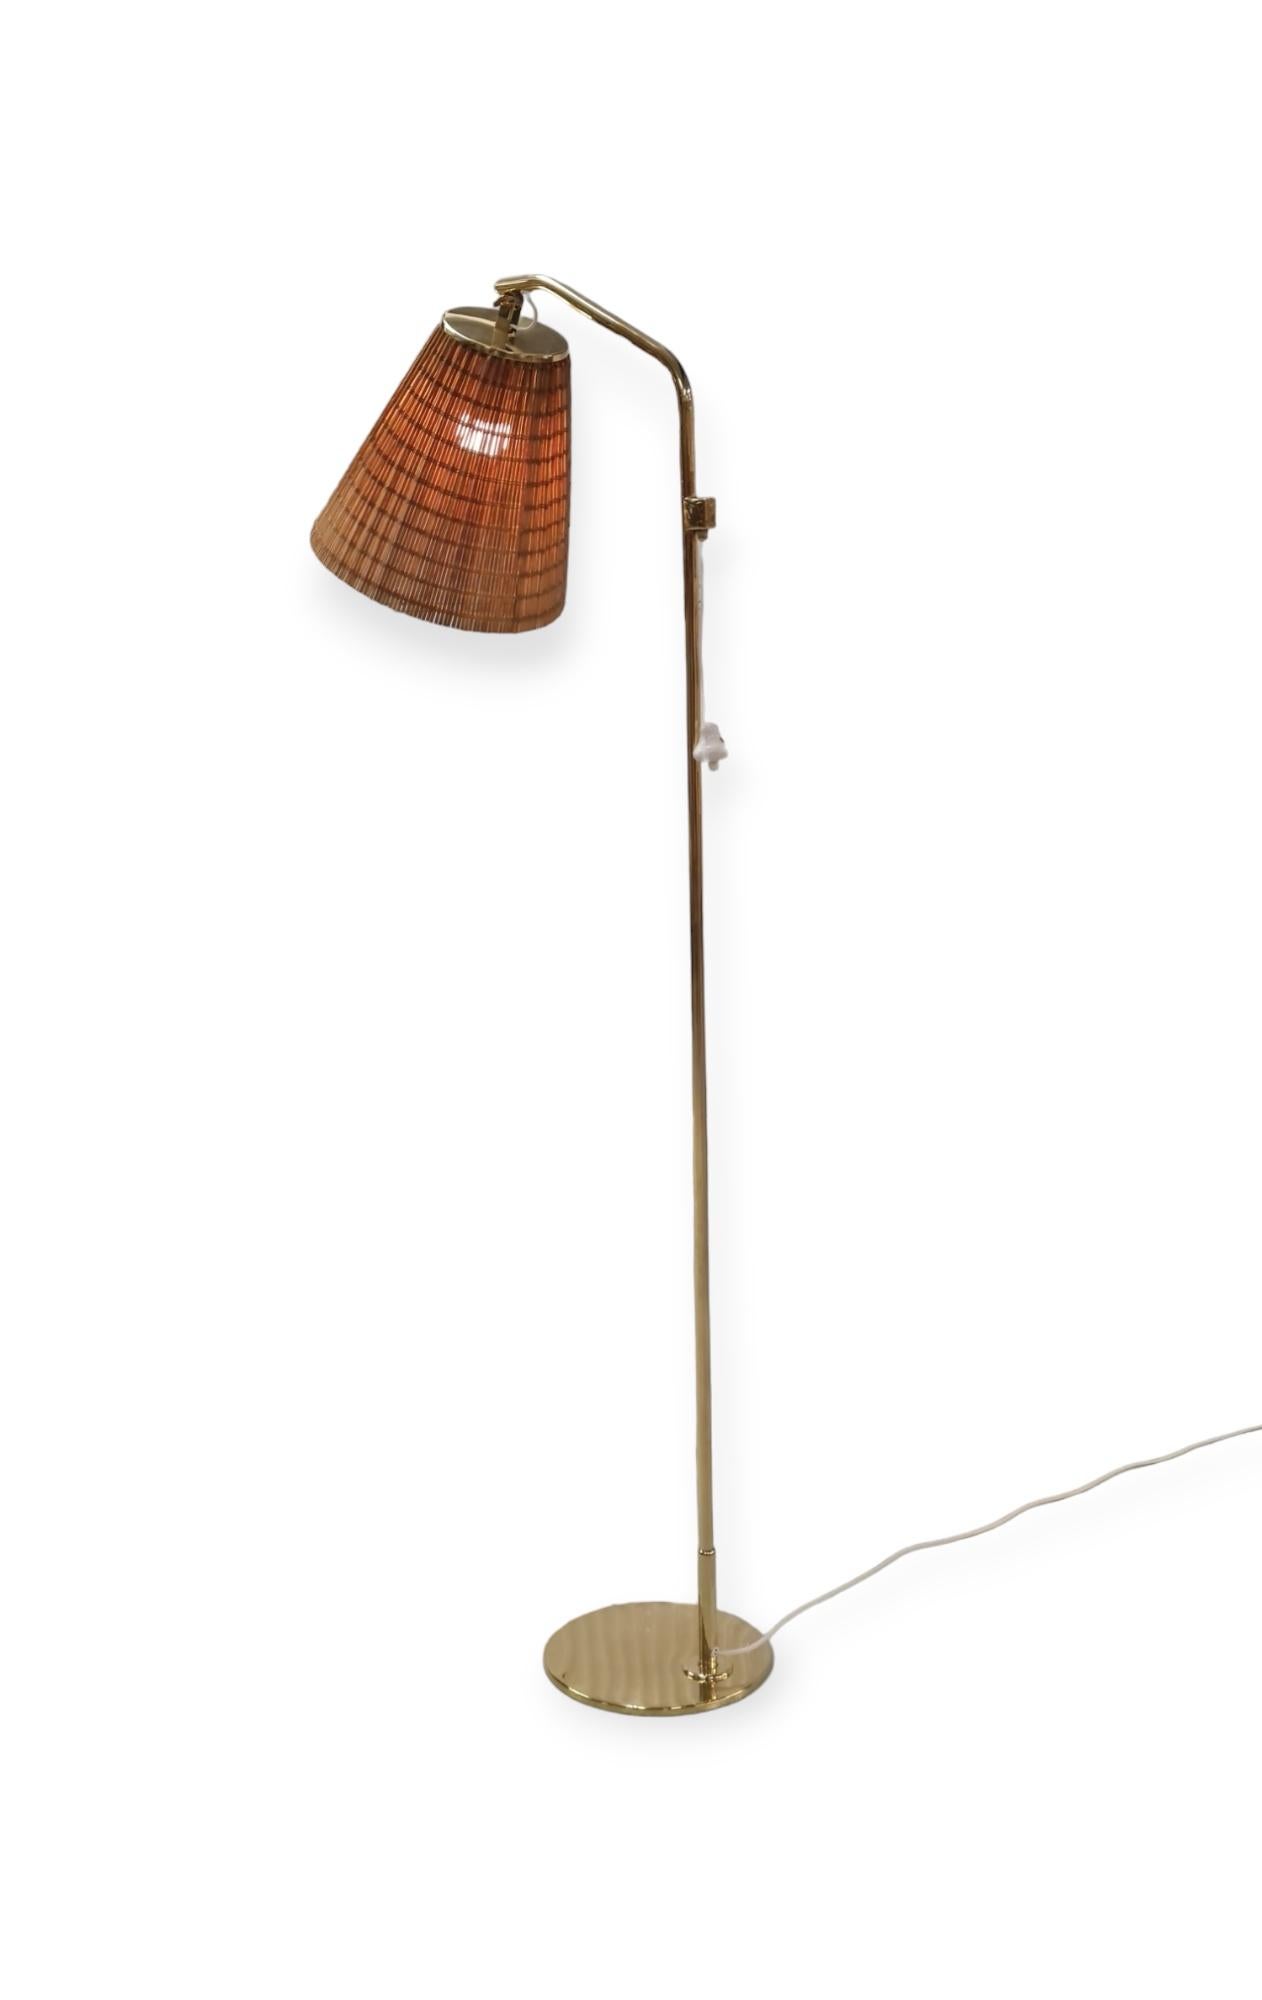 Un lampadaire élégant du maître designer Paavo Tynell. Ce lampadaire minimaliste modèle 9613 porte une élégance dans sa simplicité. L'abat-jour est réglable, ce qui rend cette lampe parfaite pour les espaces de lecture, les chambres à coucher ou les